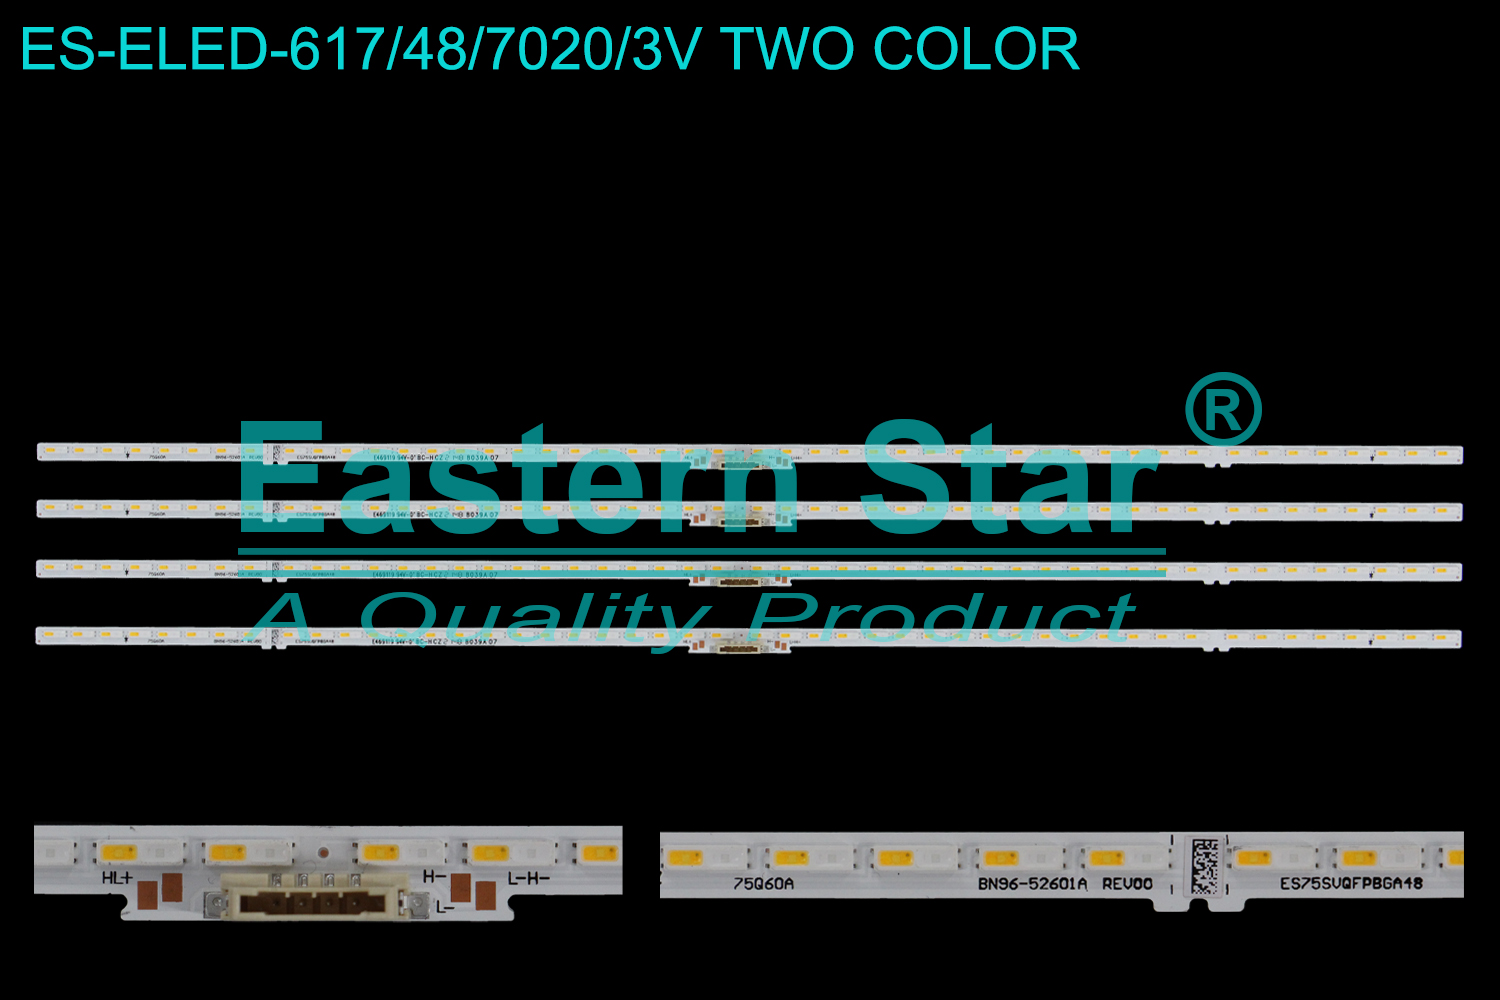 ES-ELED-617 ELED/EDGE TV backlight use for 75'' Samsung QN75Q6DAAFXZA  75Q60A BN96-52601A REV00 ES75SVQFPBGA48  E469119  8039A 07  LED STRIPS(4)